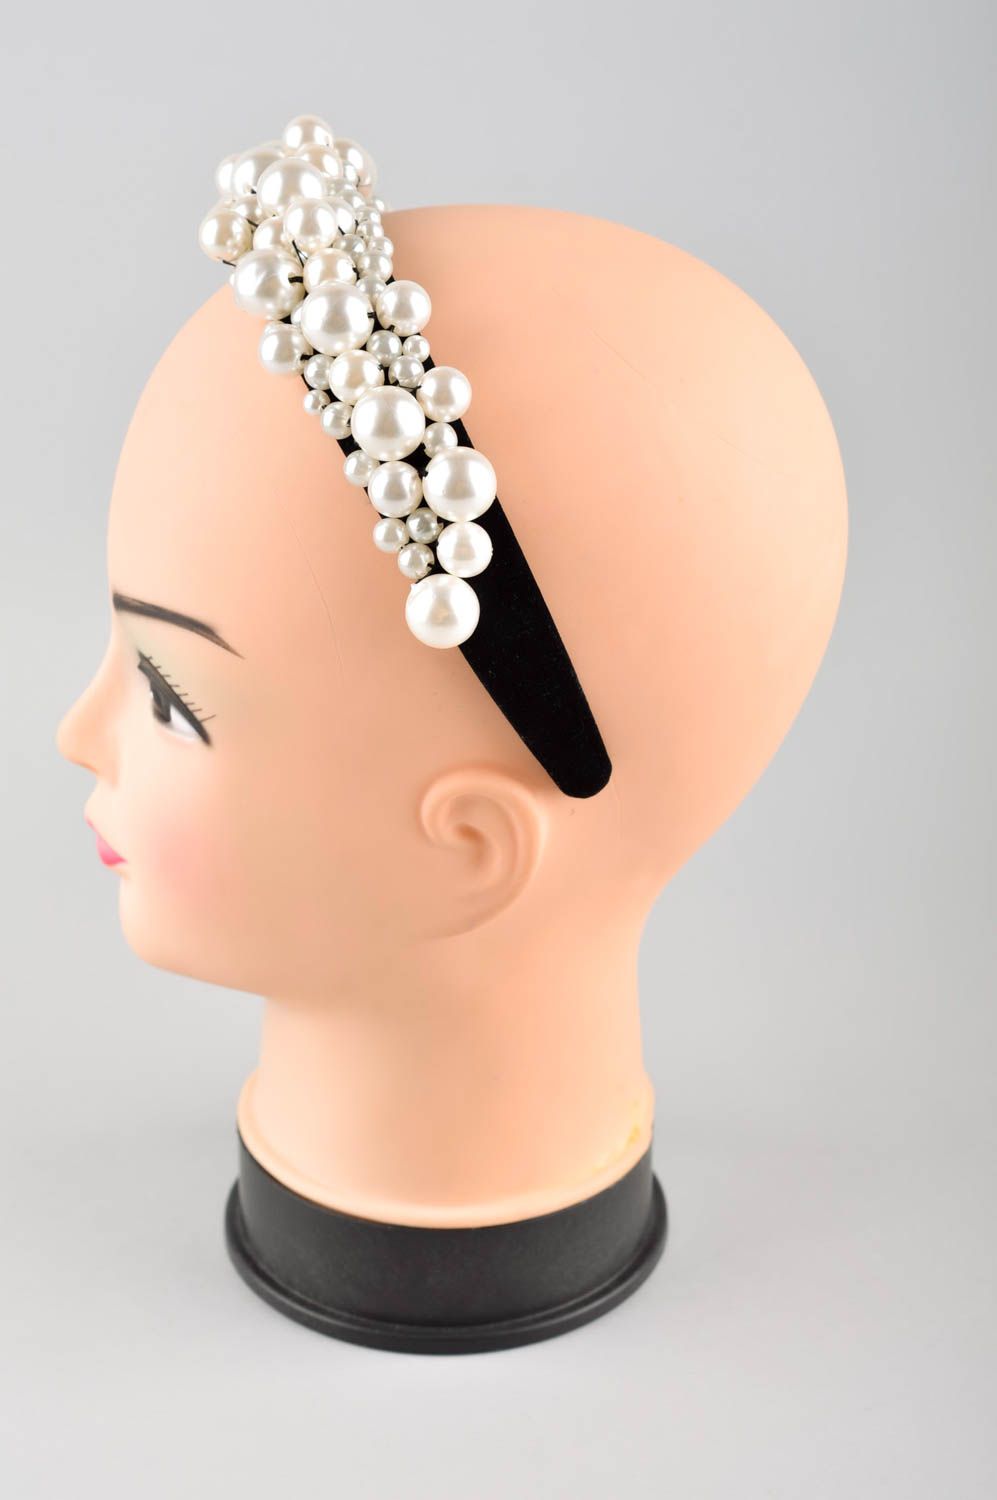 Аксессуар для волос хэнд мэйд обруч на голову из бусин женский аксессуар фото 2